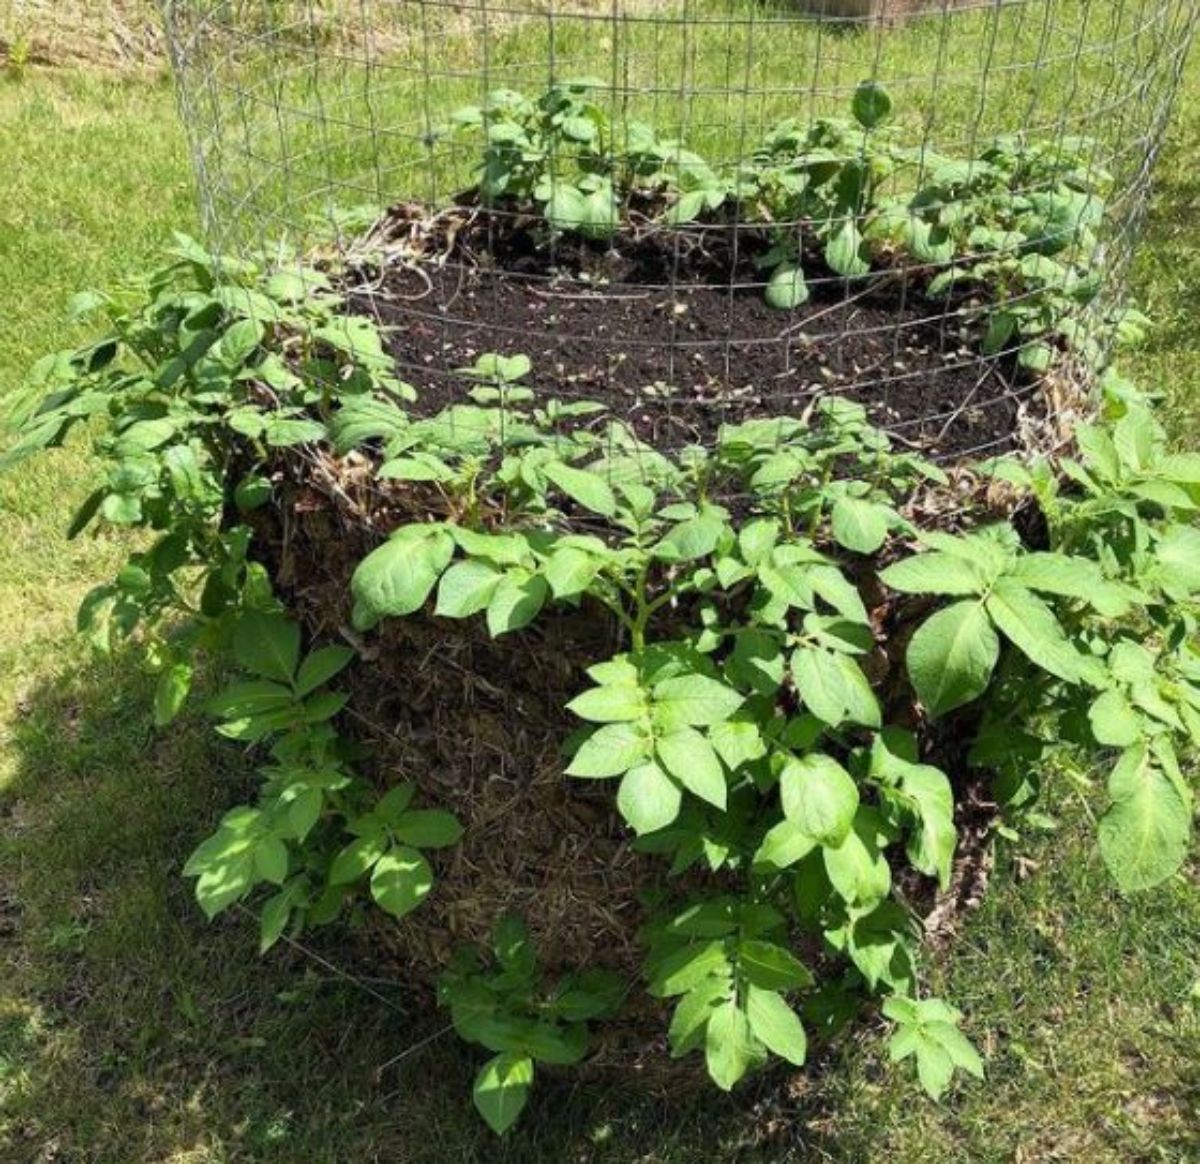 Kartoffelturm mit wachsenden Kartoffelpflanzen mit grünen gesunden Blättern im Garten